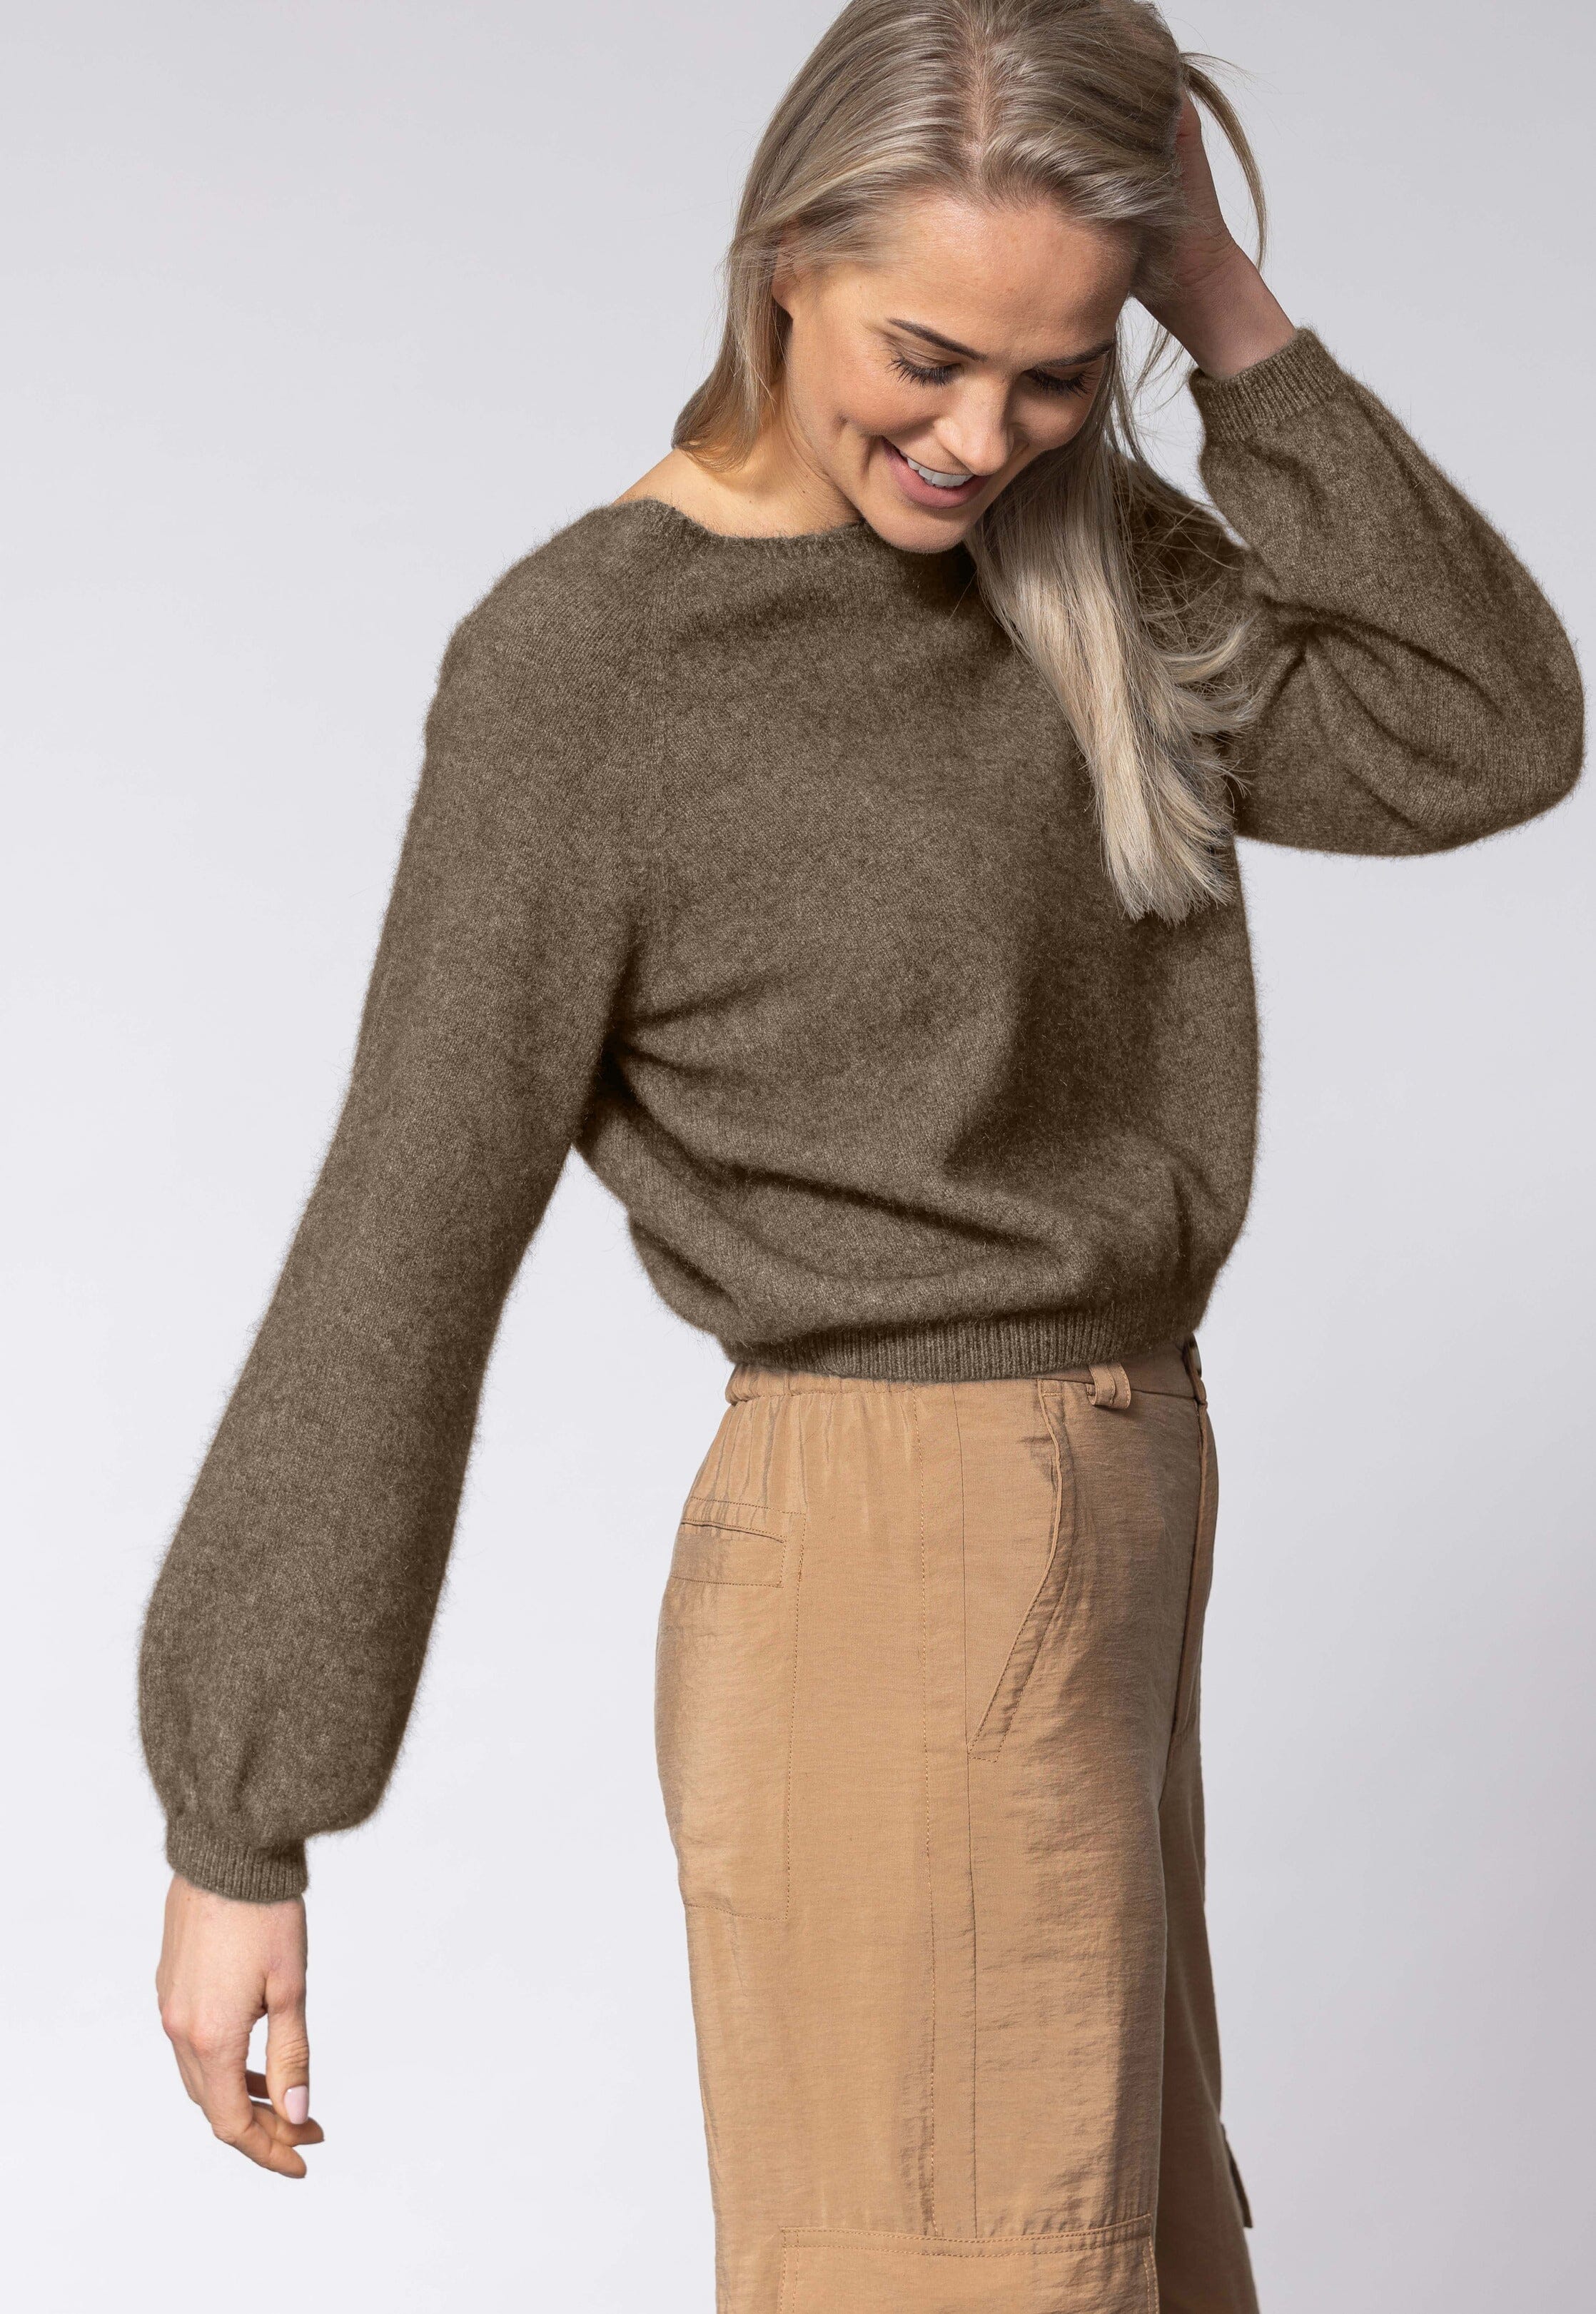 Bellow Sleeve Top Women Sweater Noble Wilde 